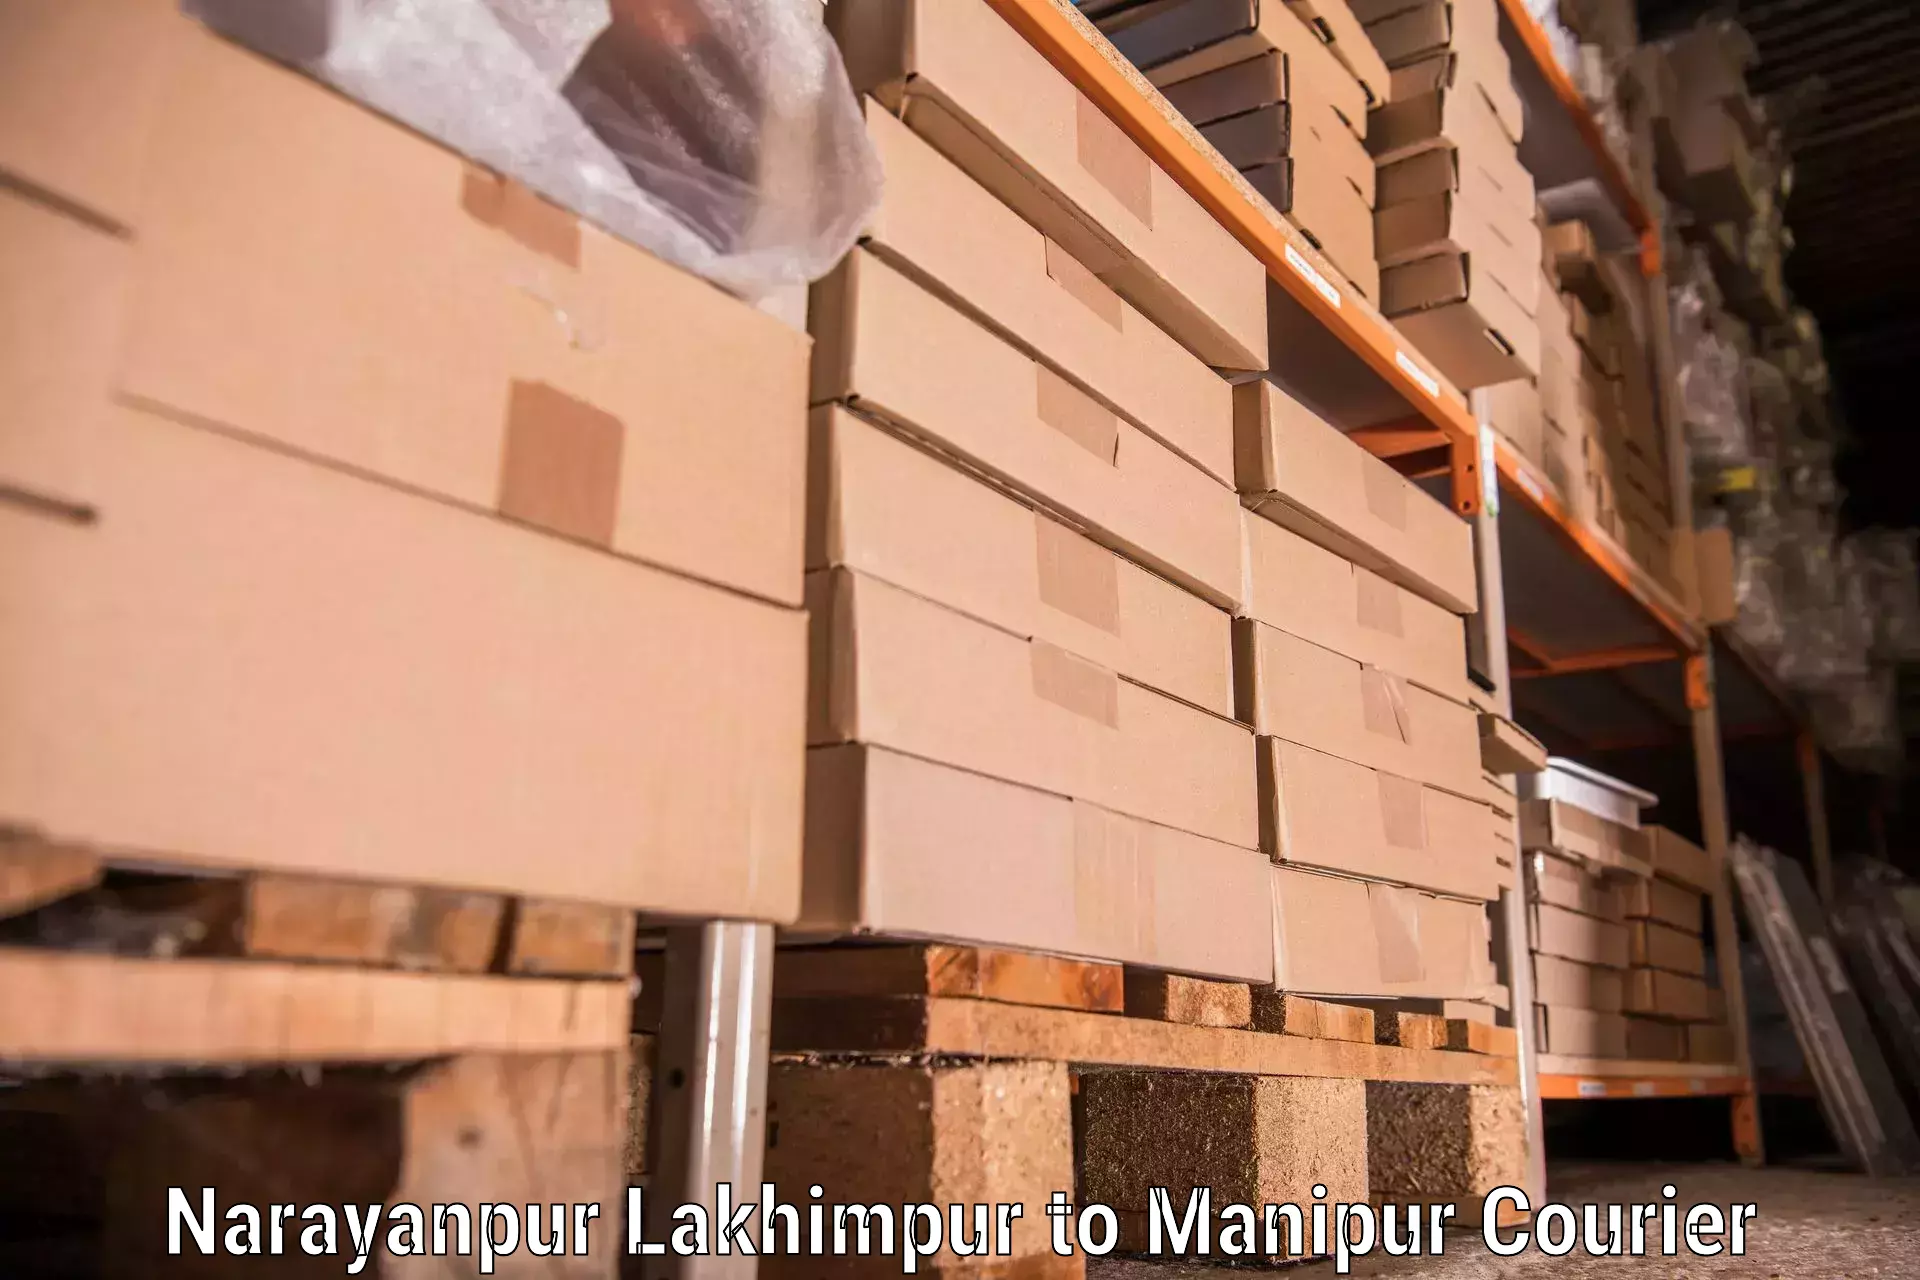 Moving and storage services Narayanpur Lakhimpur to Senapati